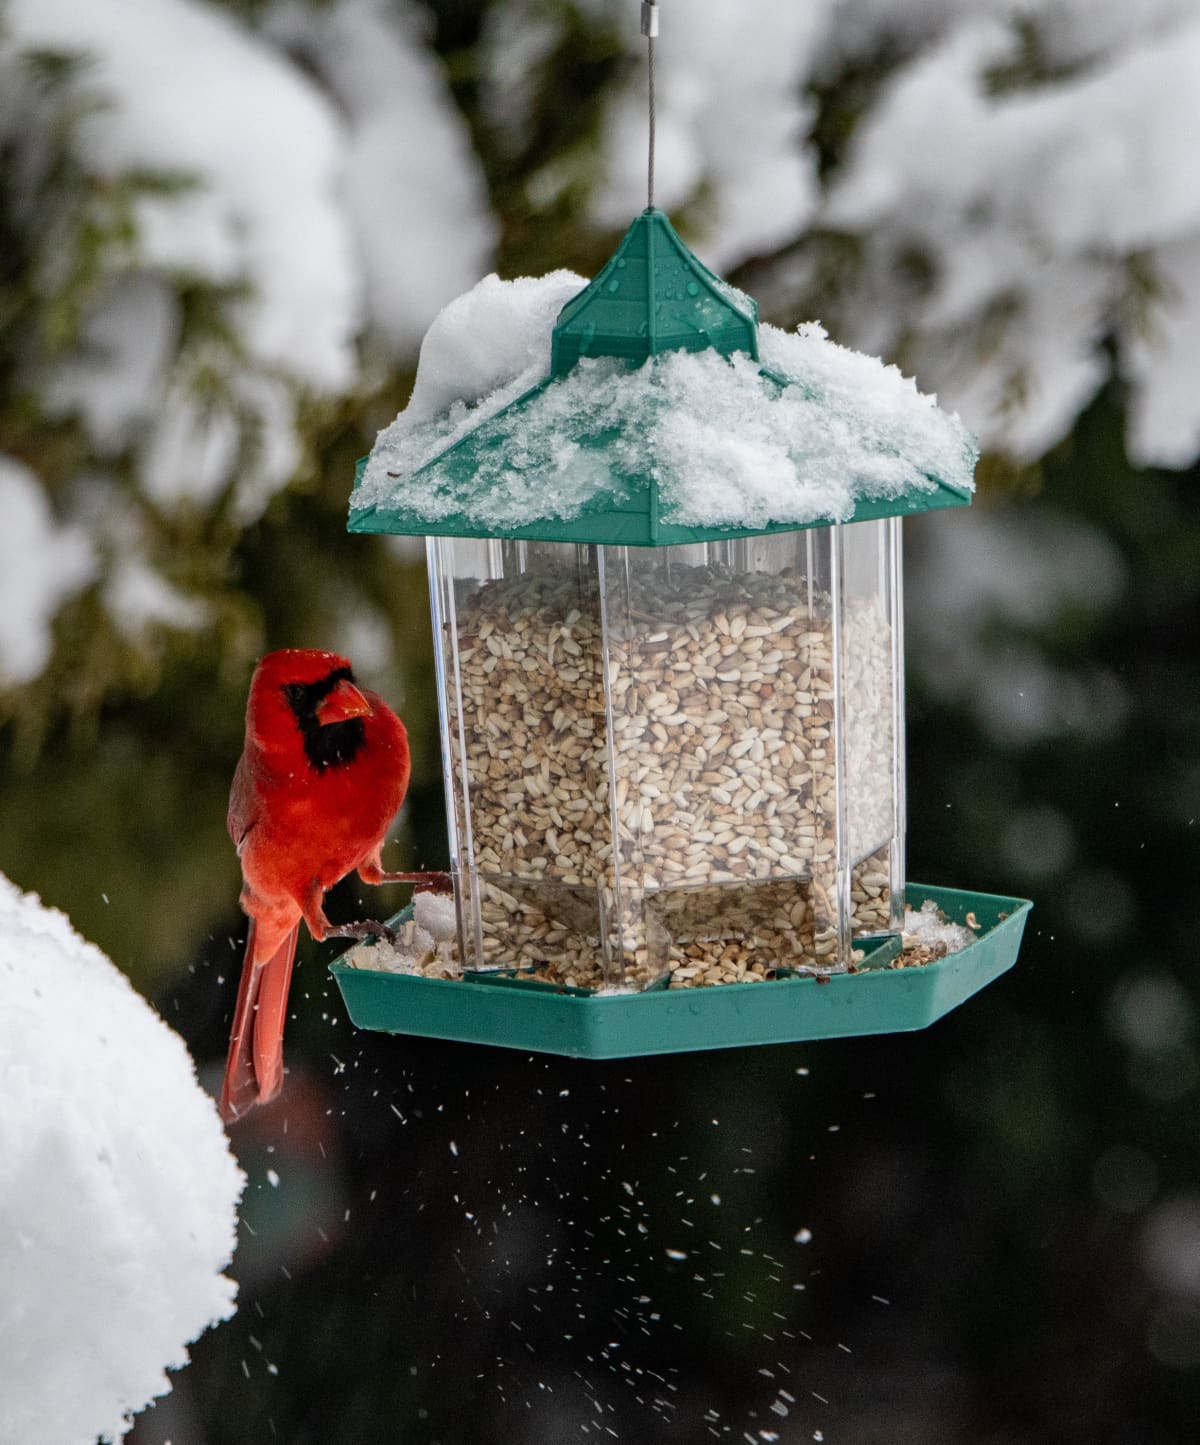 A male red cardinal bird on a backyard bird feeder